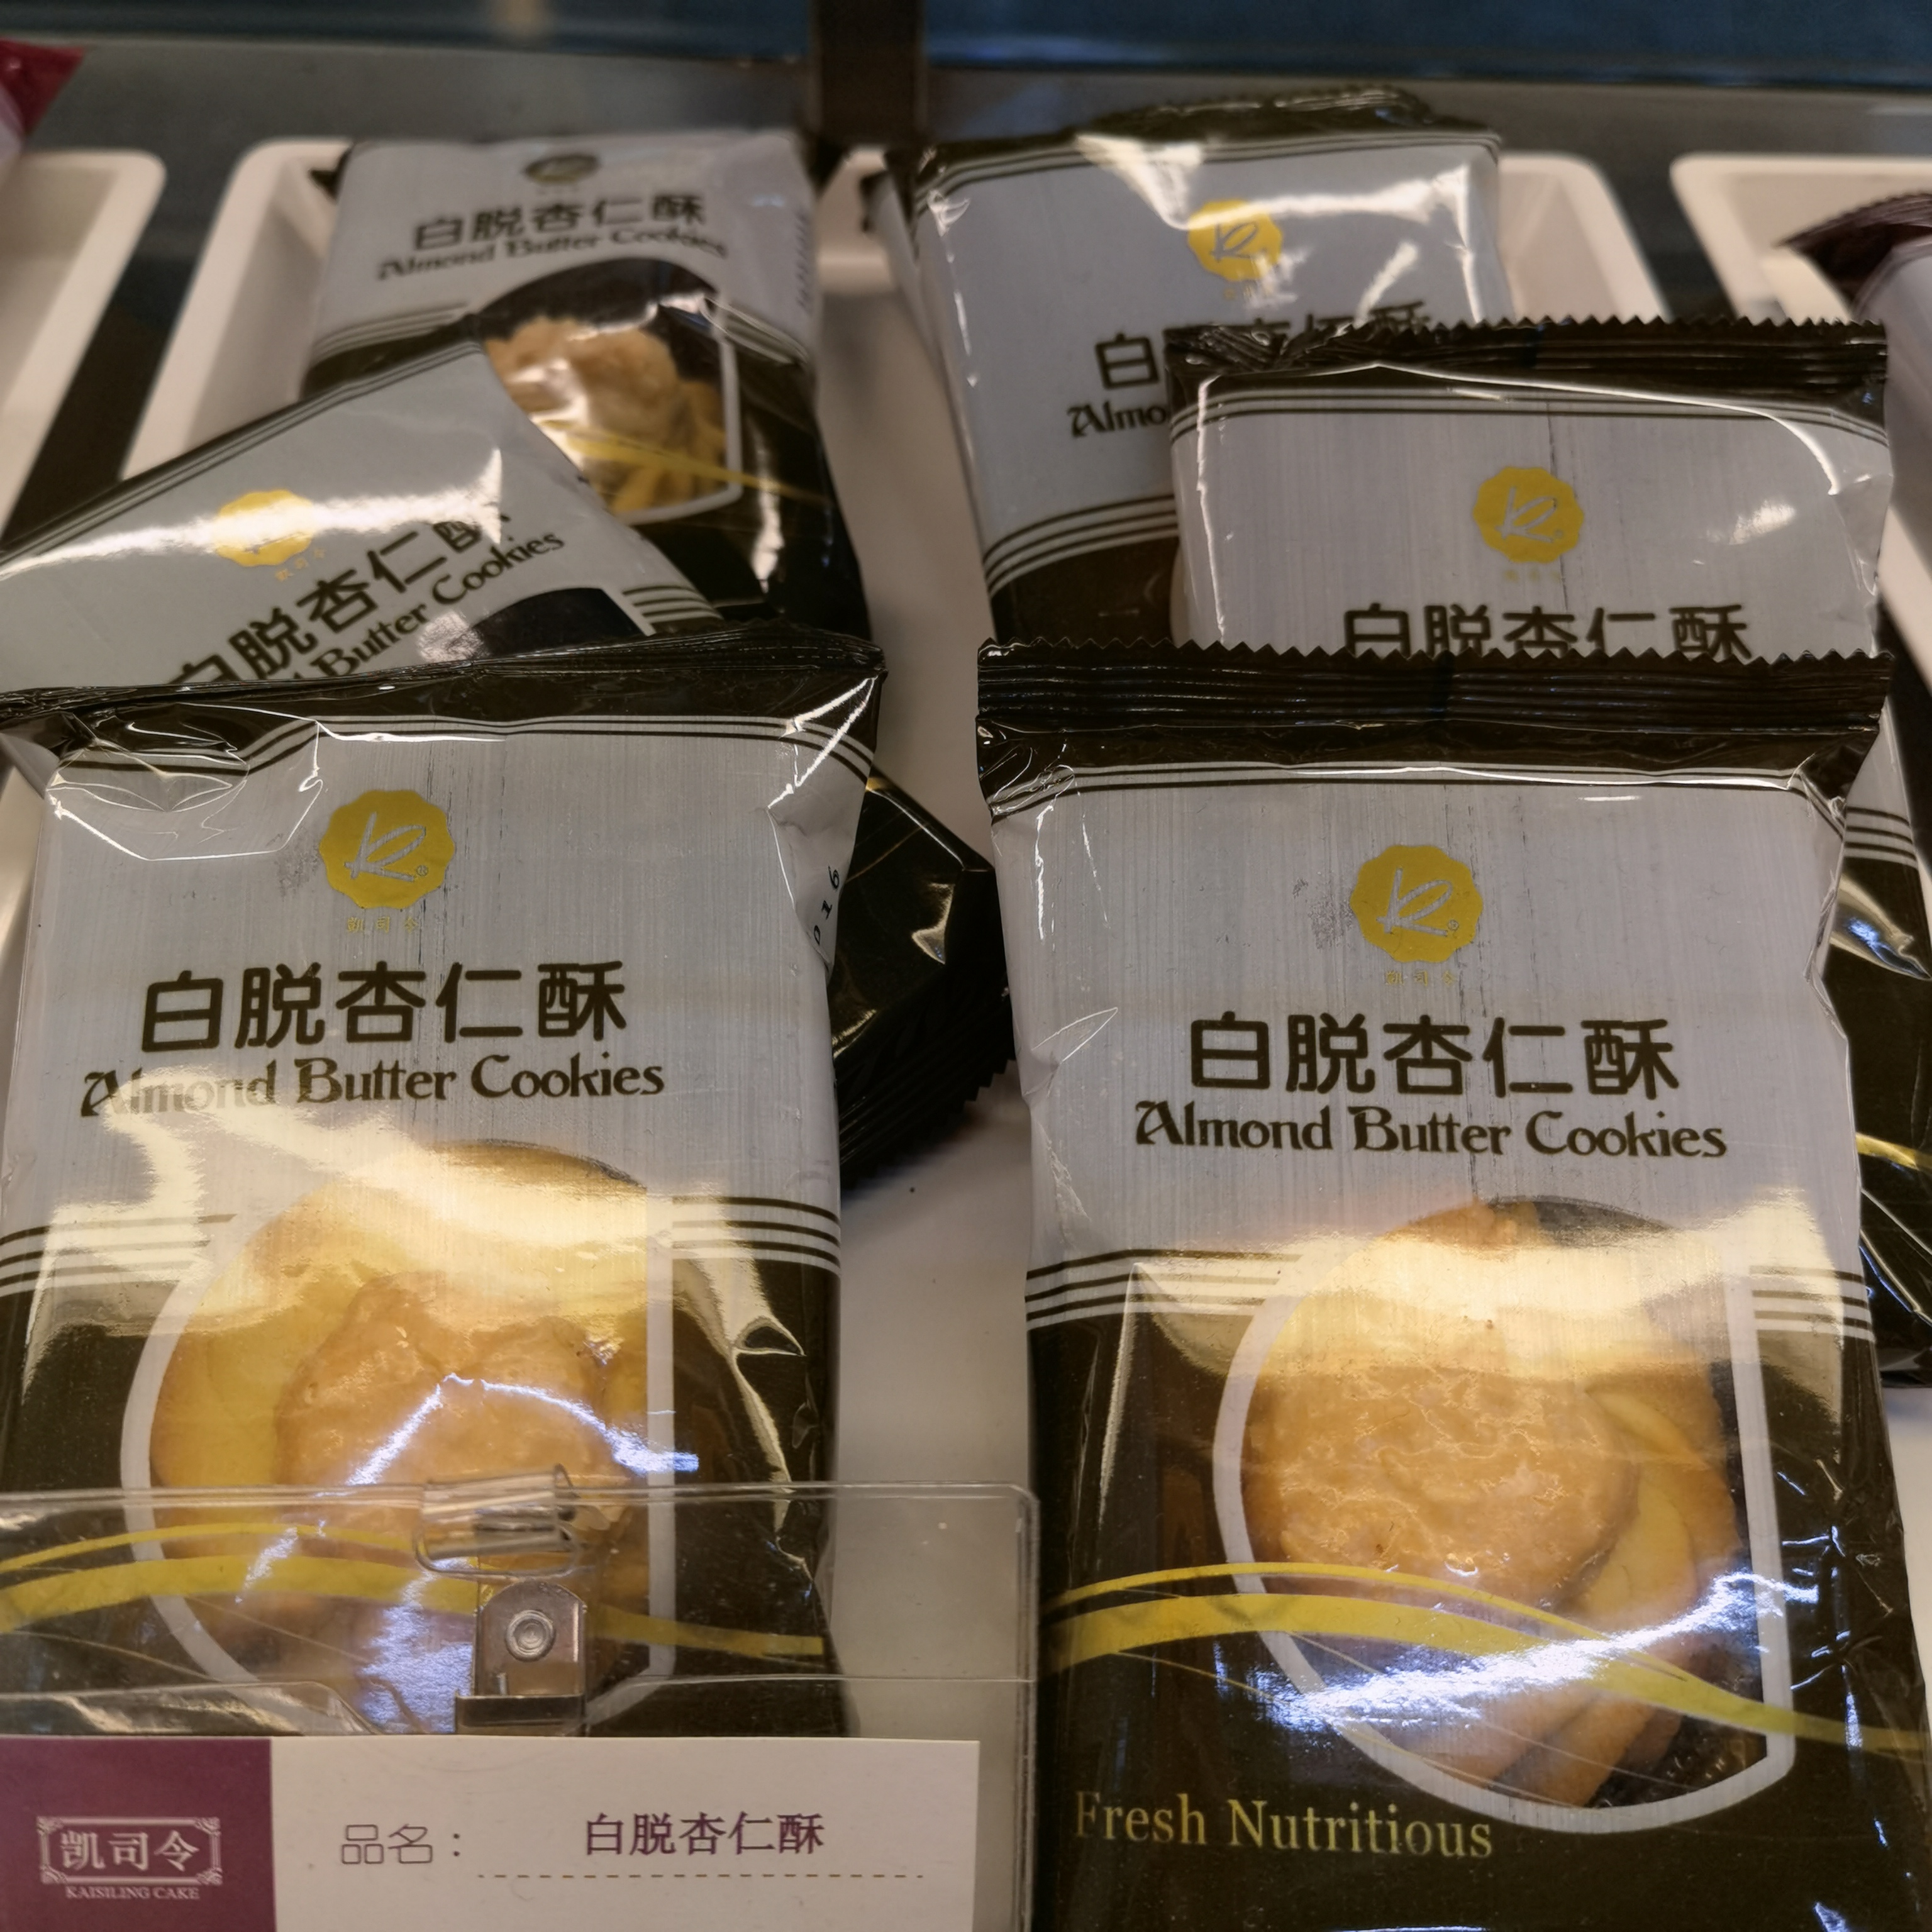 上海凯司令蛋糕白脱饼干系列花生杏仁蔓越莓巧克力传统糕点35g1个 - 图1